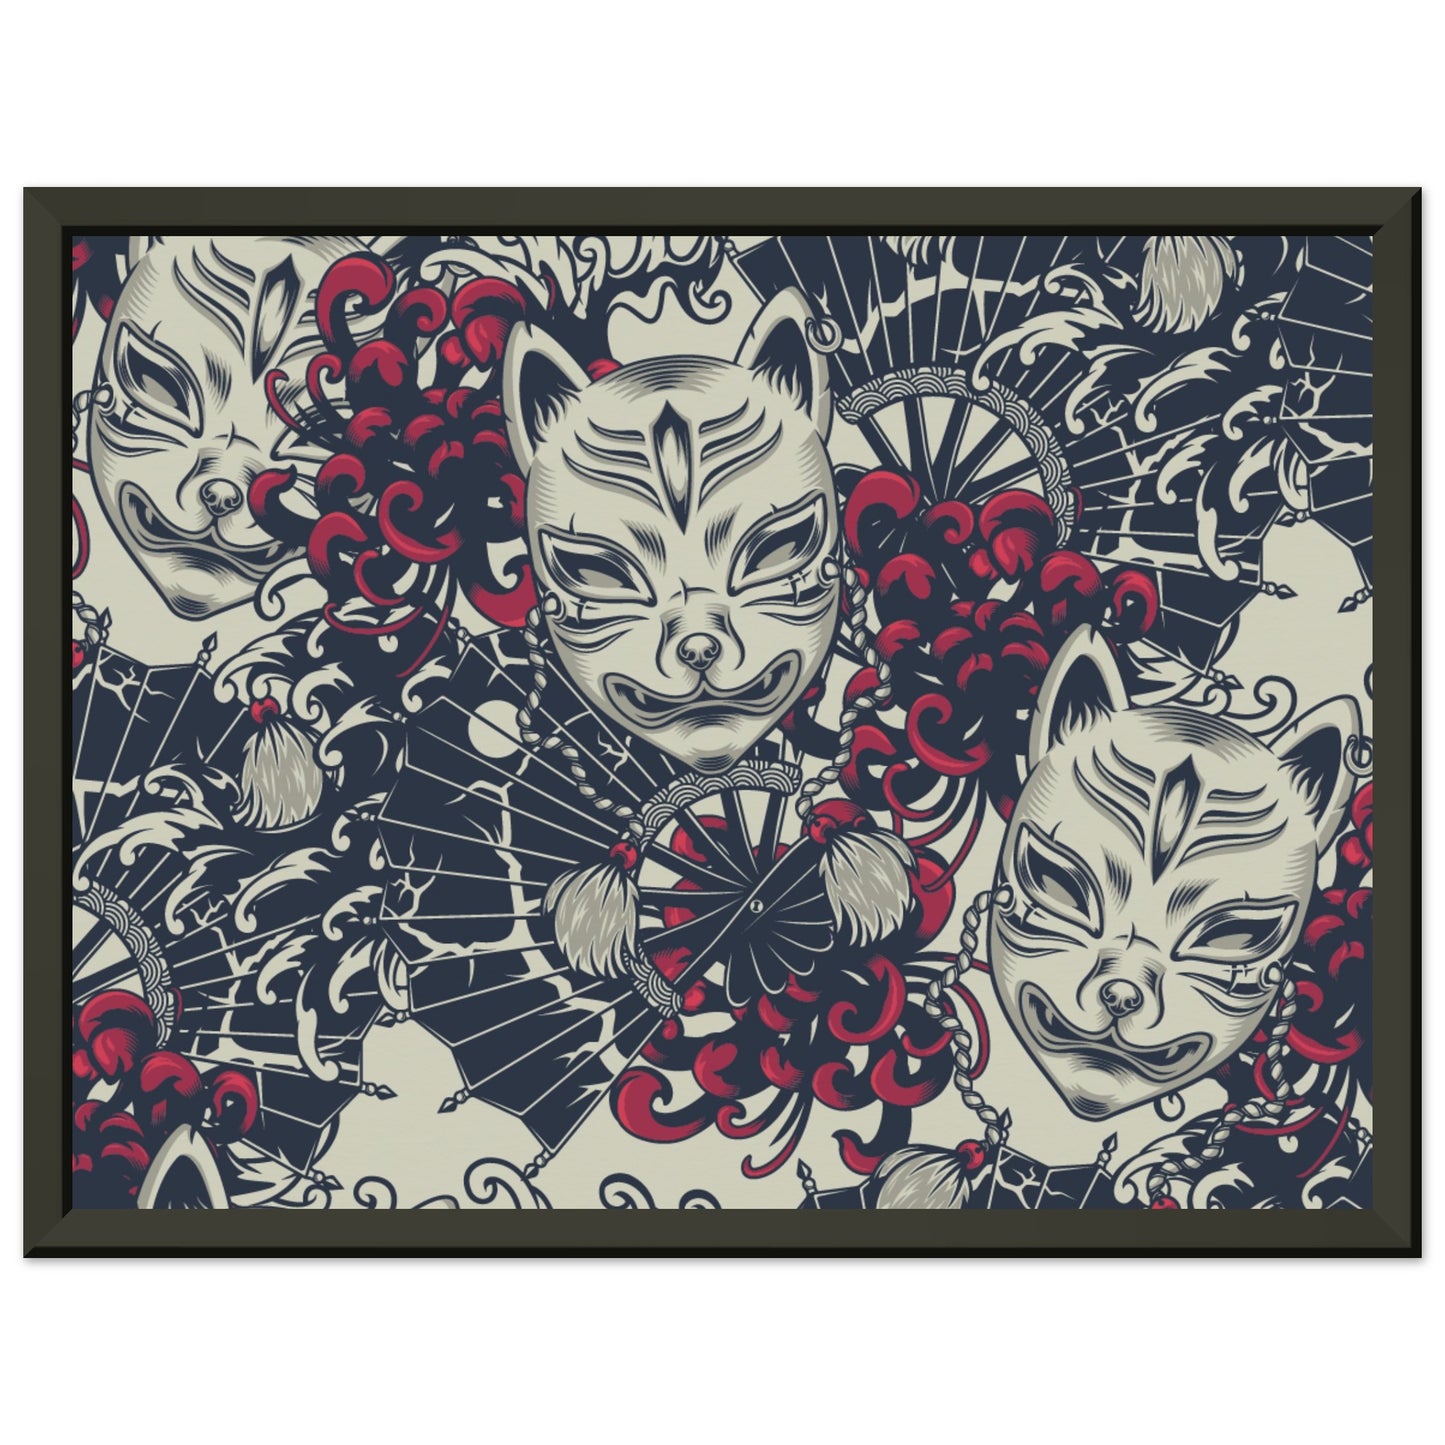 Kitsune mask pattern